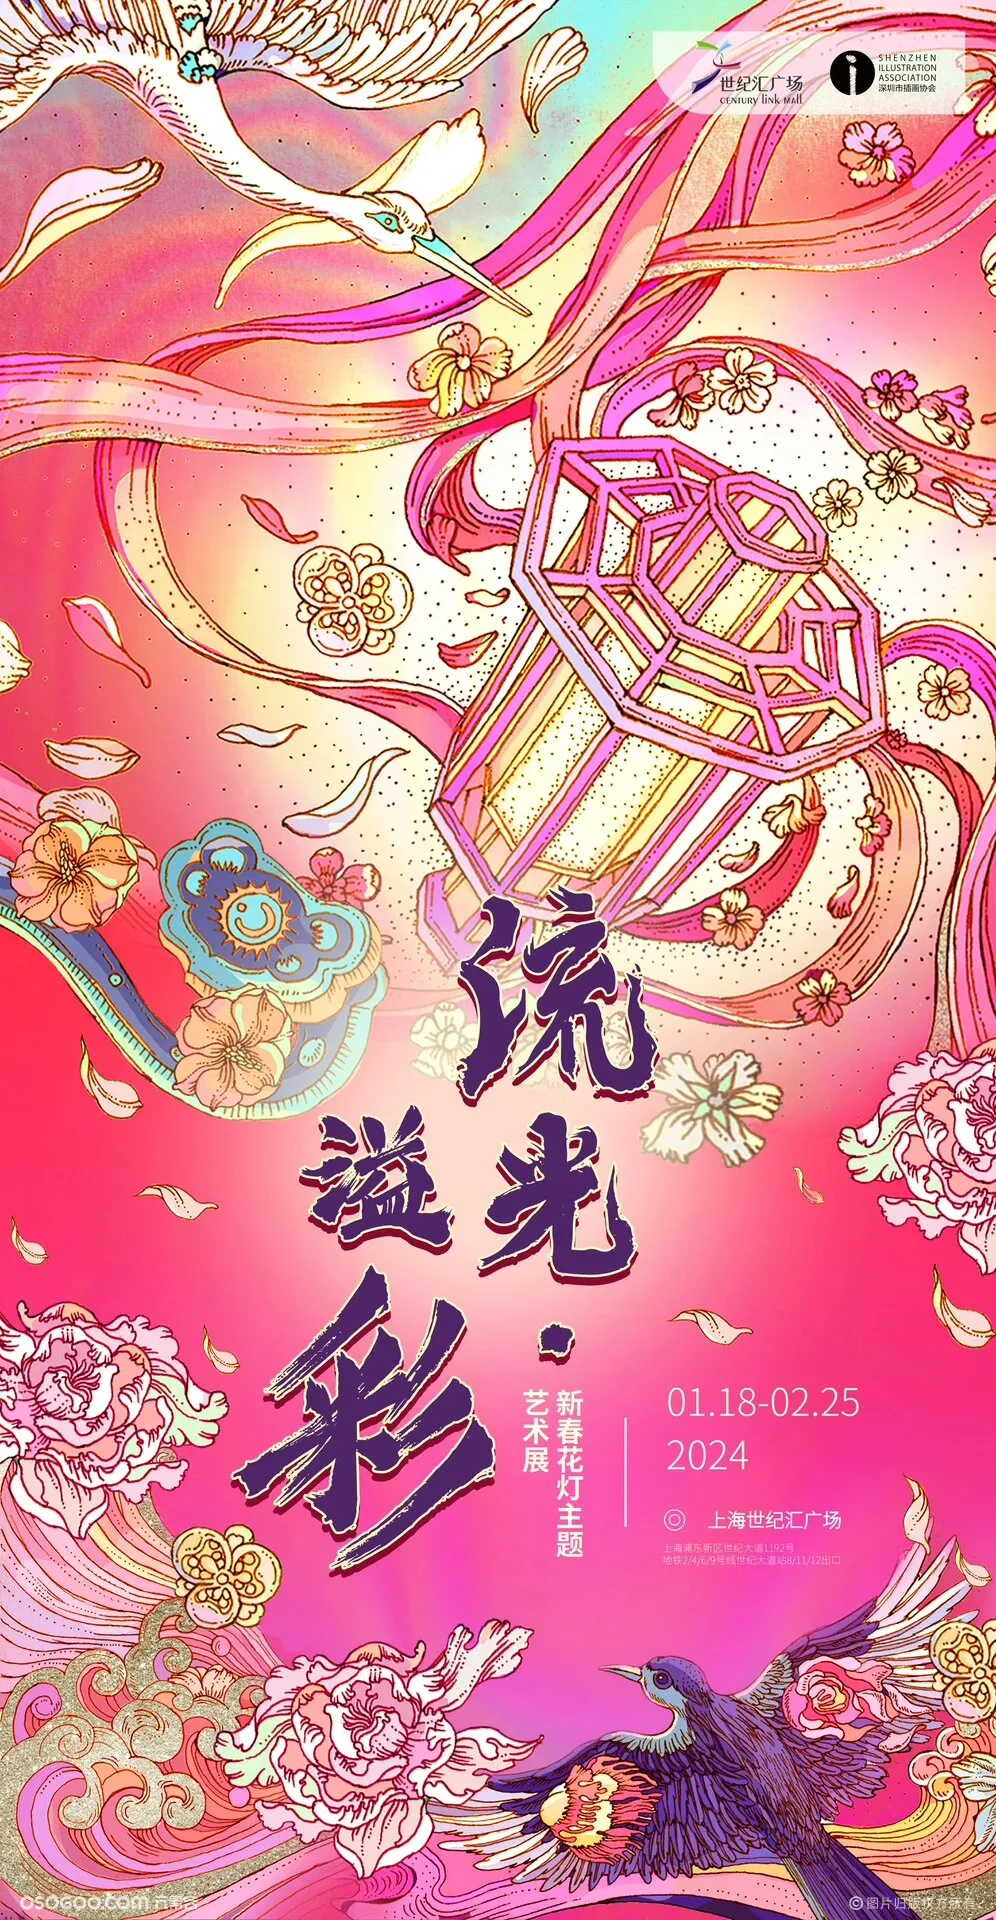 「流光·溢彩」 新春花灯主题艺术展